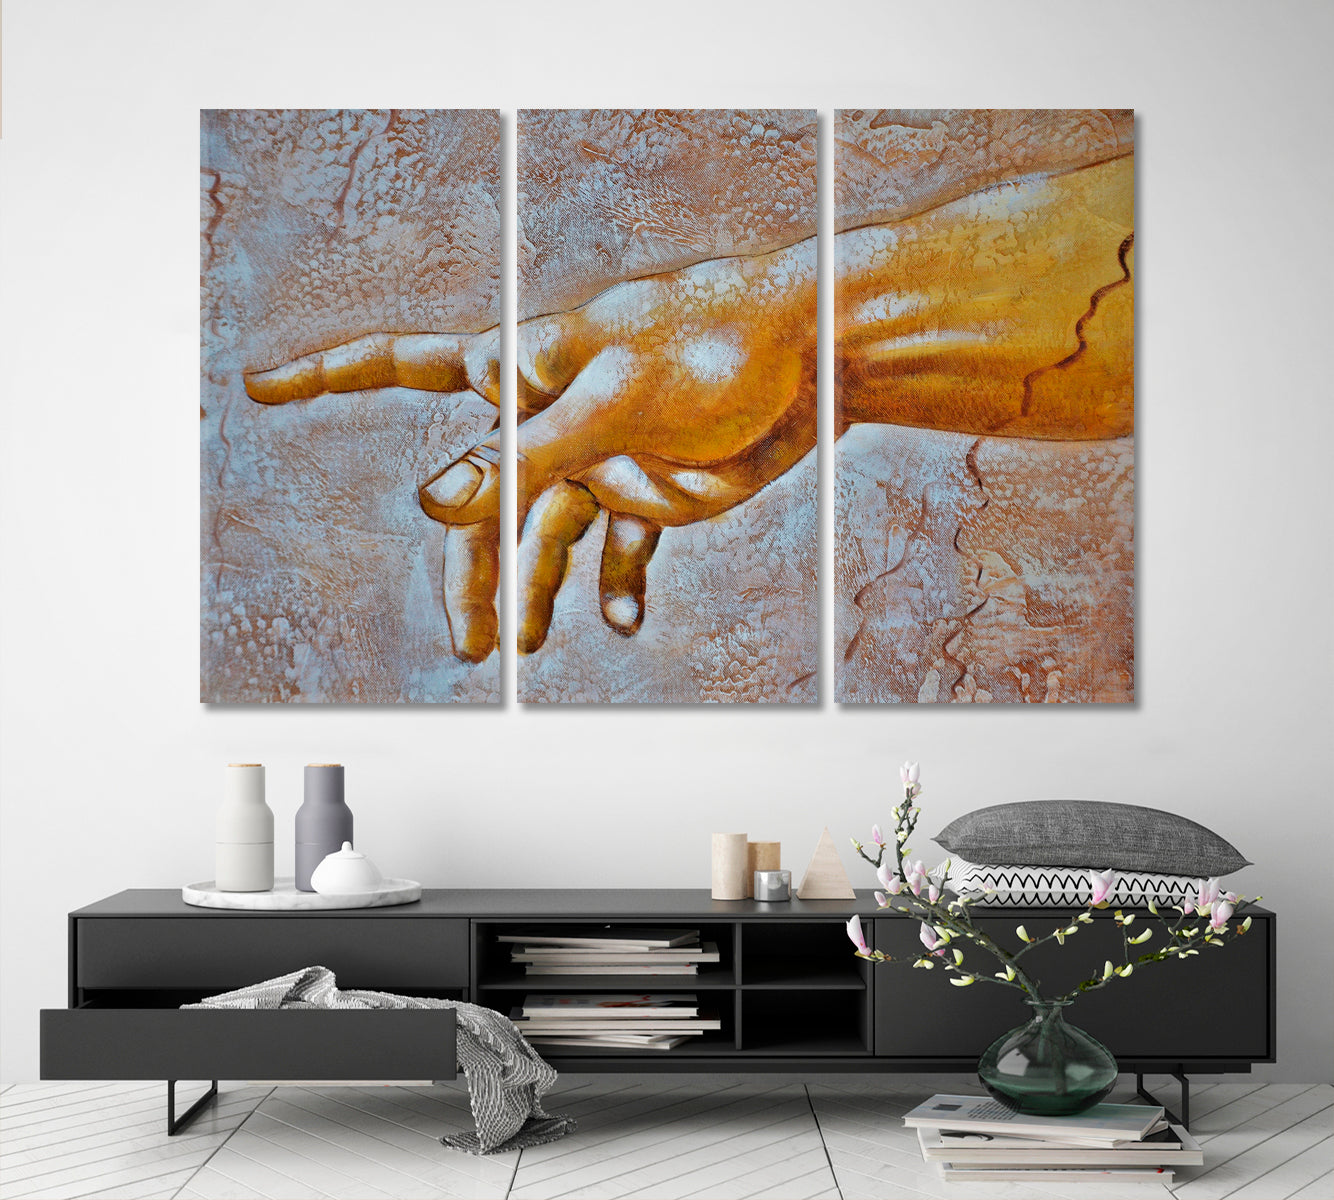 HAND OF GOD Religious Da Vinci Style Religious Modern Art Artesty 3 panels 36" x 24" 